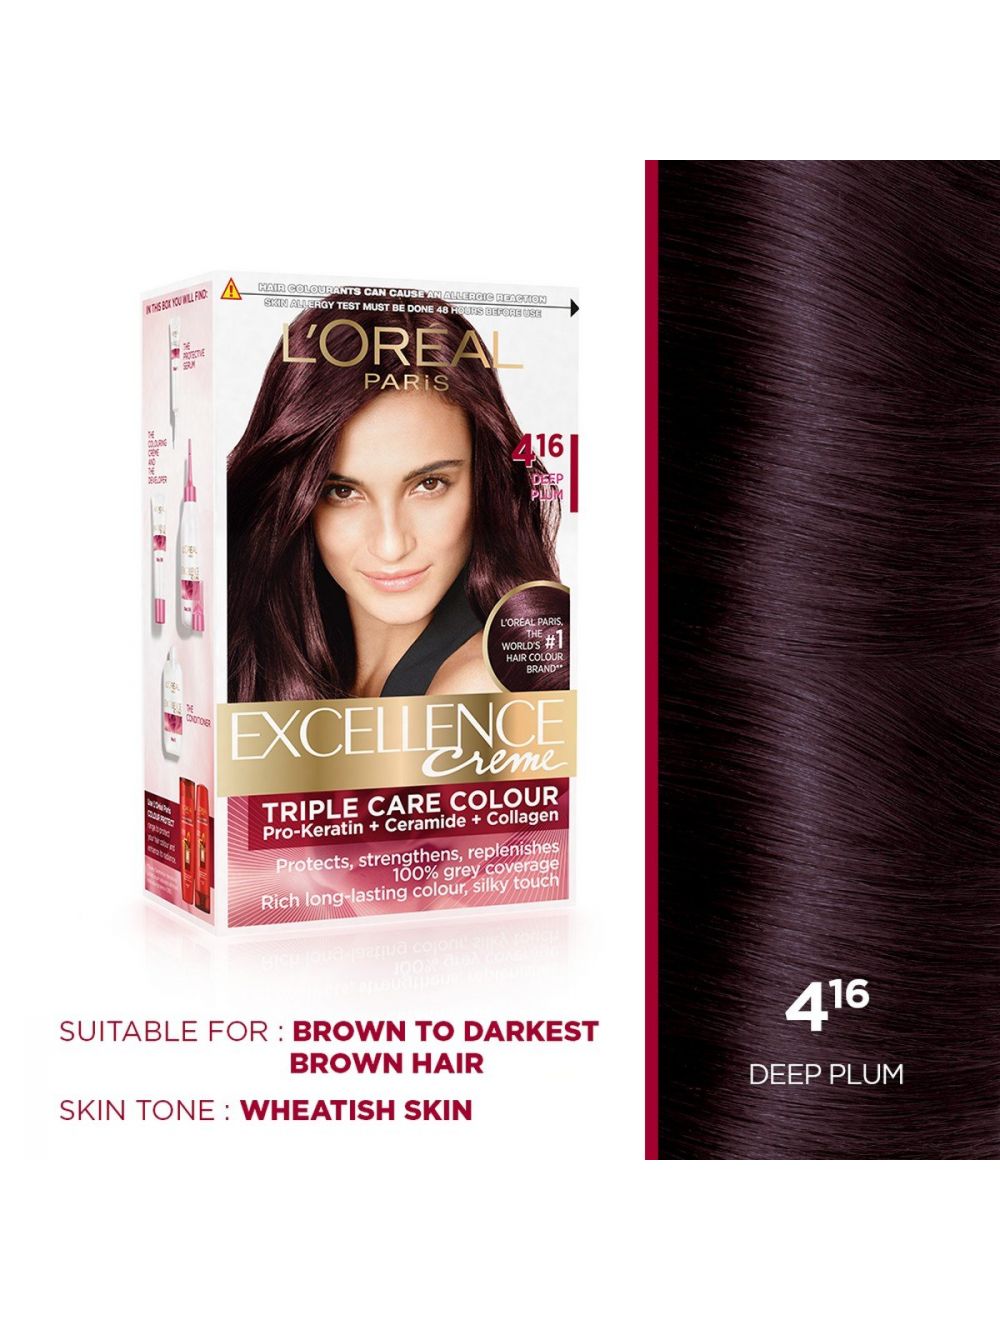 L'Oreal Paris Excellence Creme Hair Color-416 Deep Plum - Niram